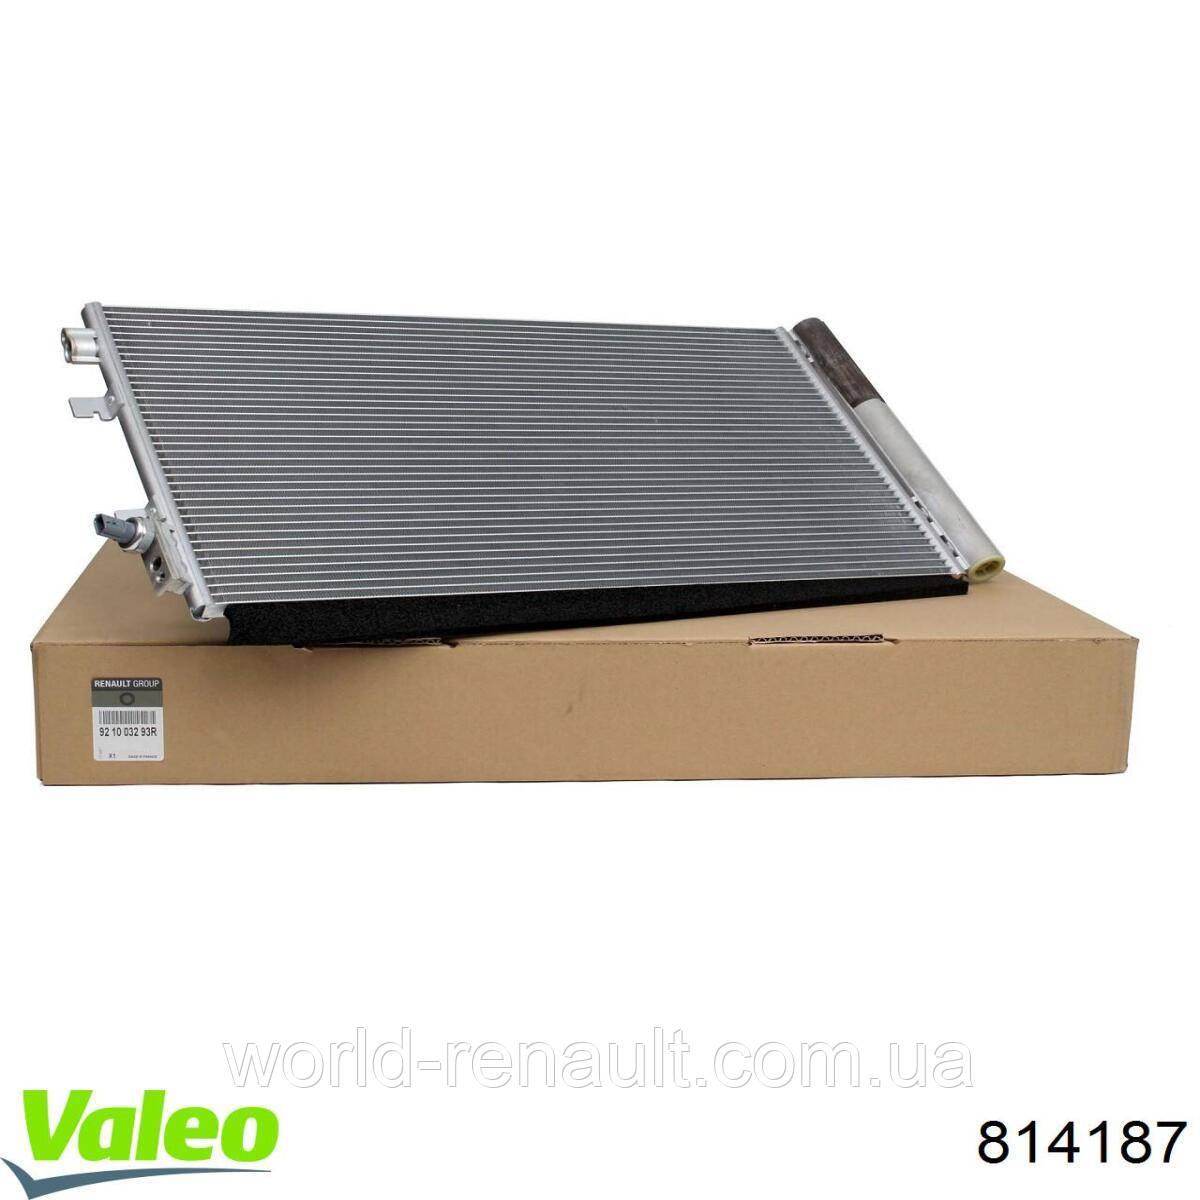 VALEO 814187 - Радиатор кондиционера на Рено Меган III 1.5dci, 1.6i 16V, 1.6dci